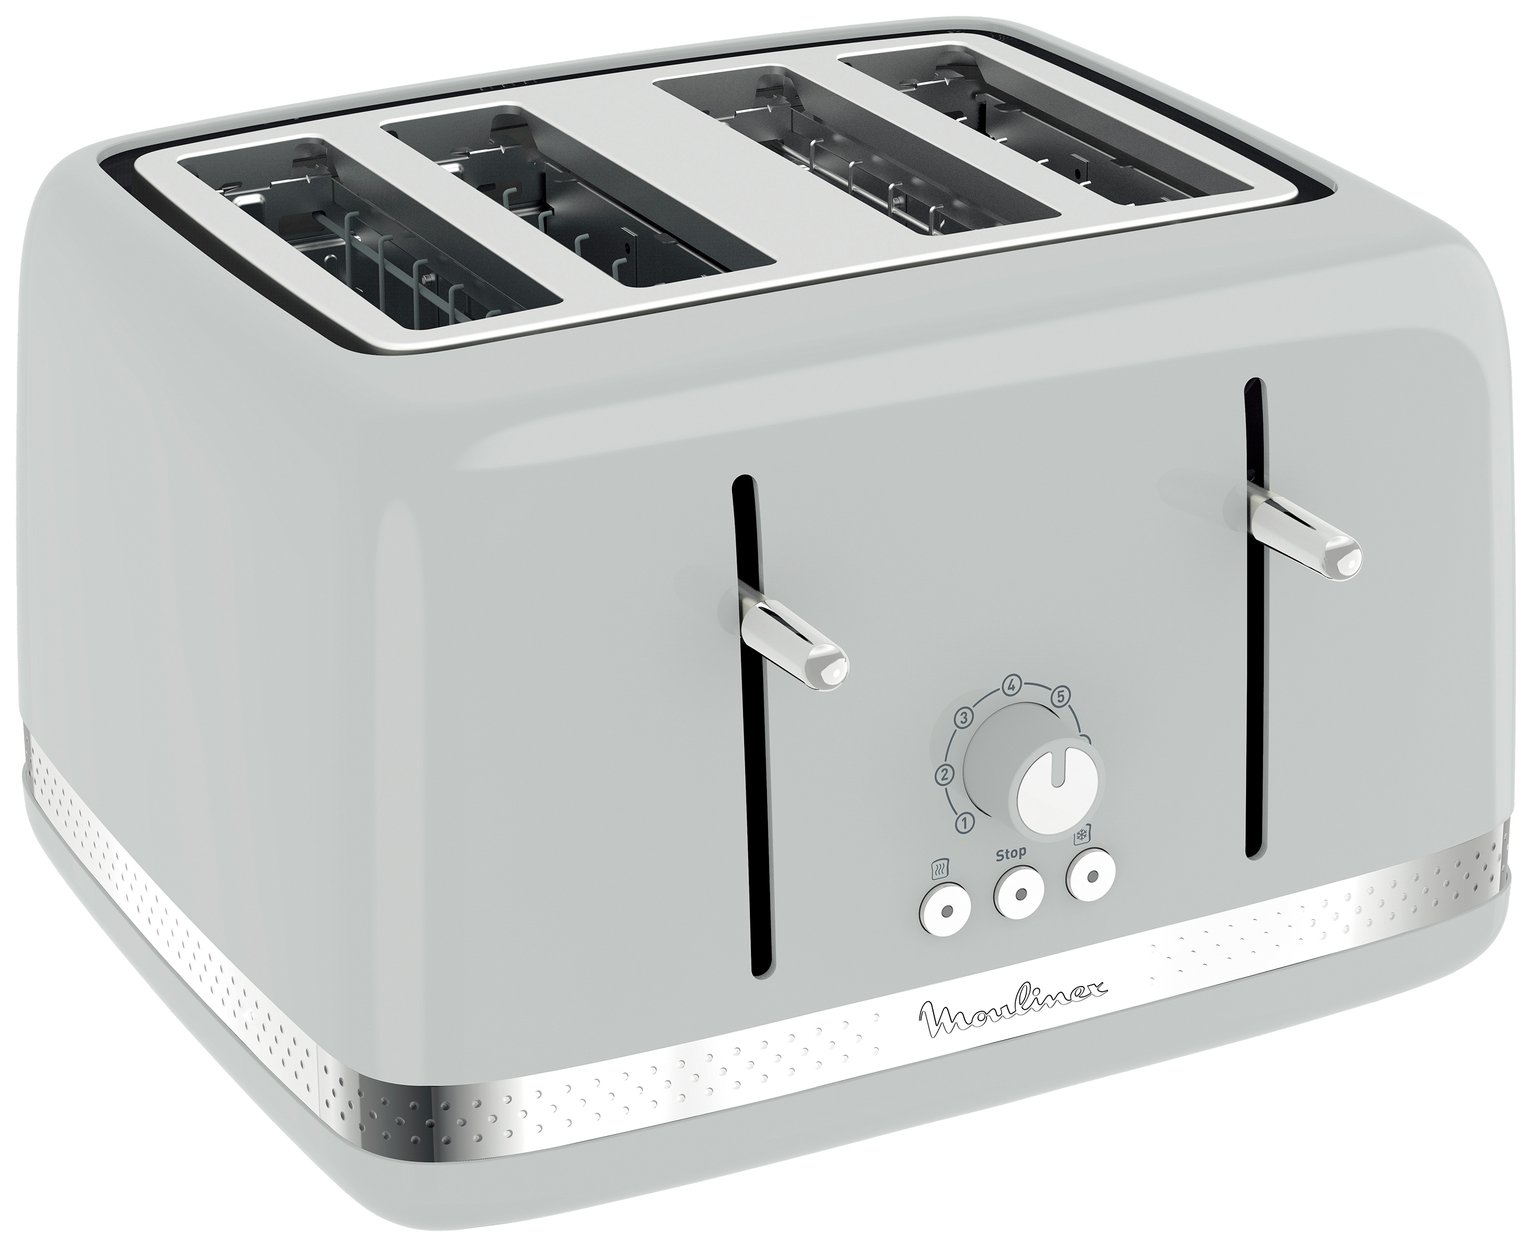 Moulinex LT305E41 4 Slice Toaster review